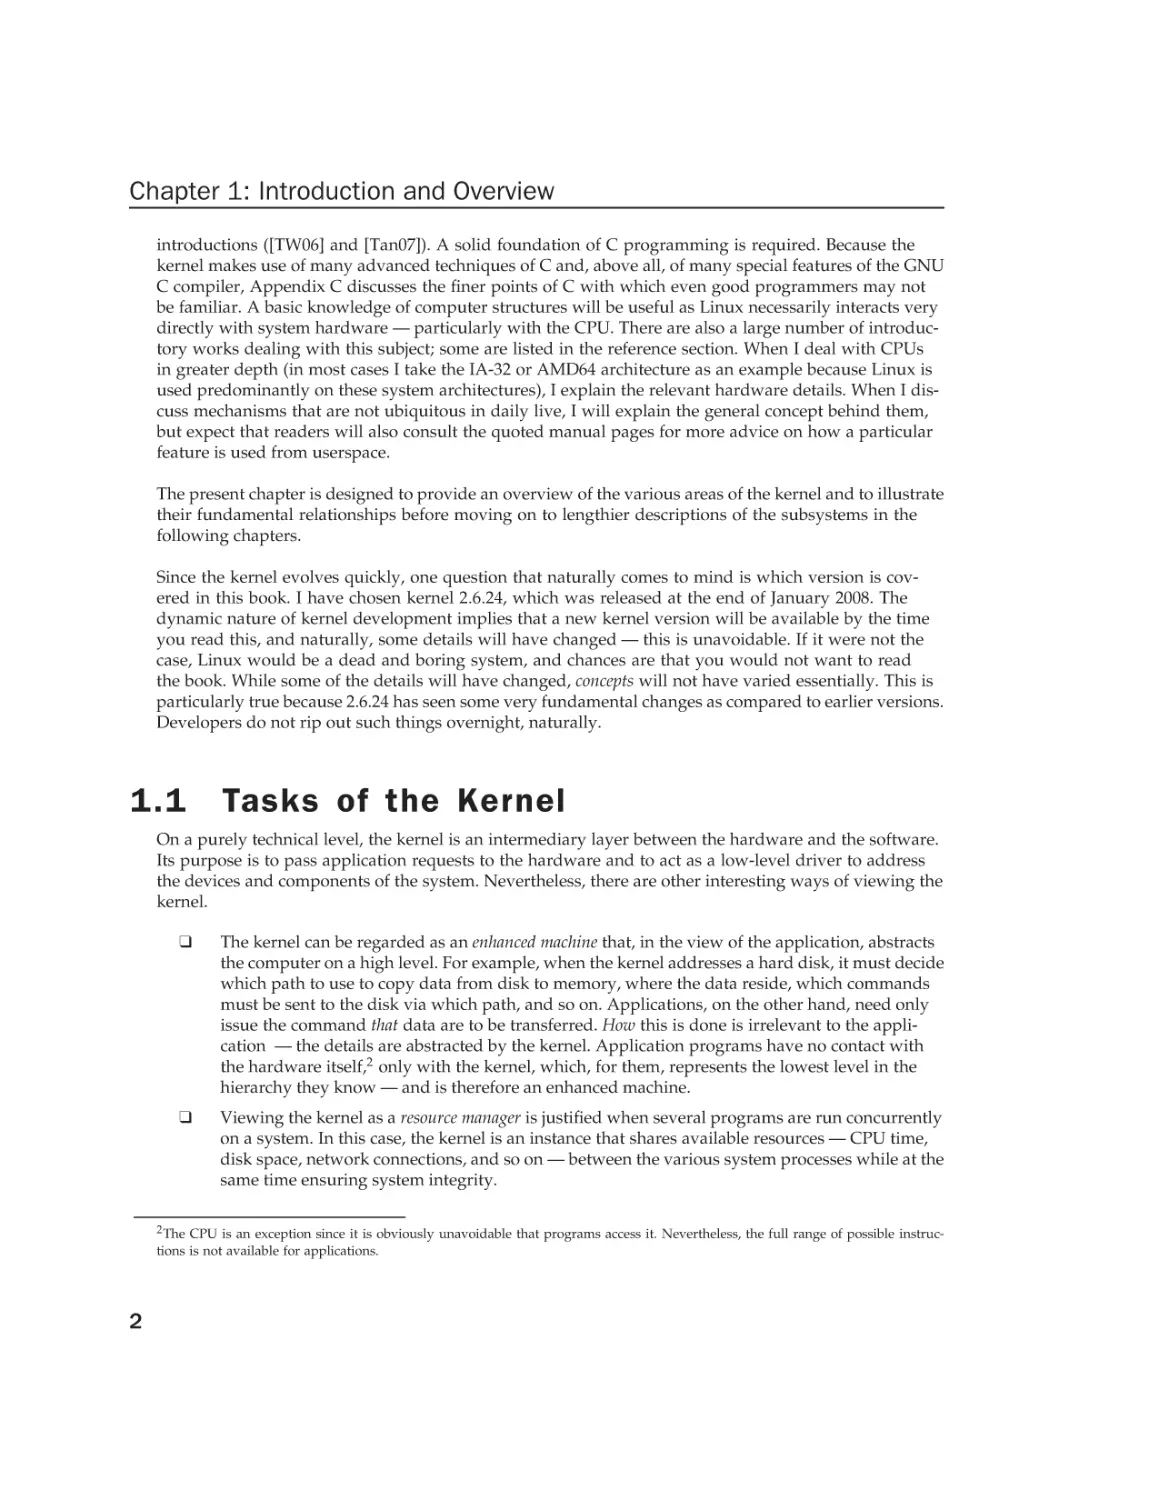 1.1 Tasks of the Kernel